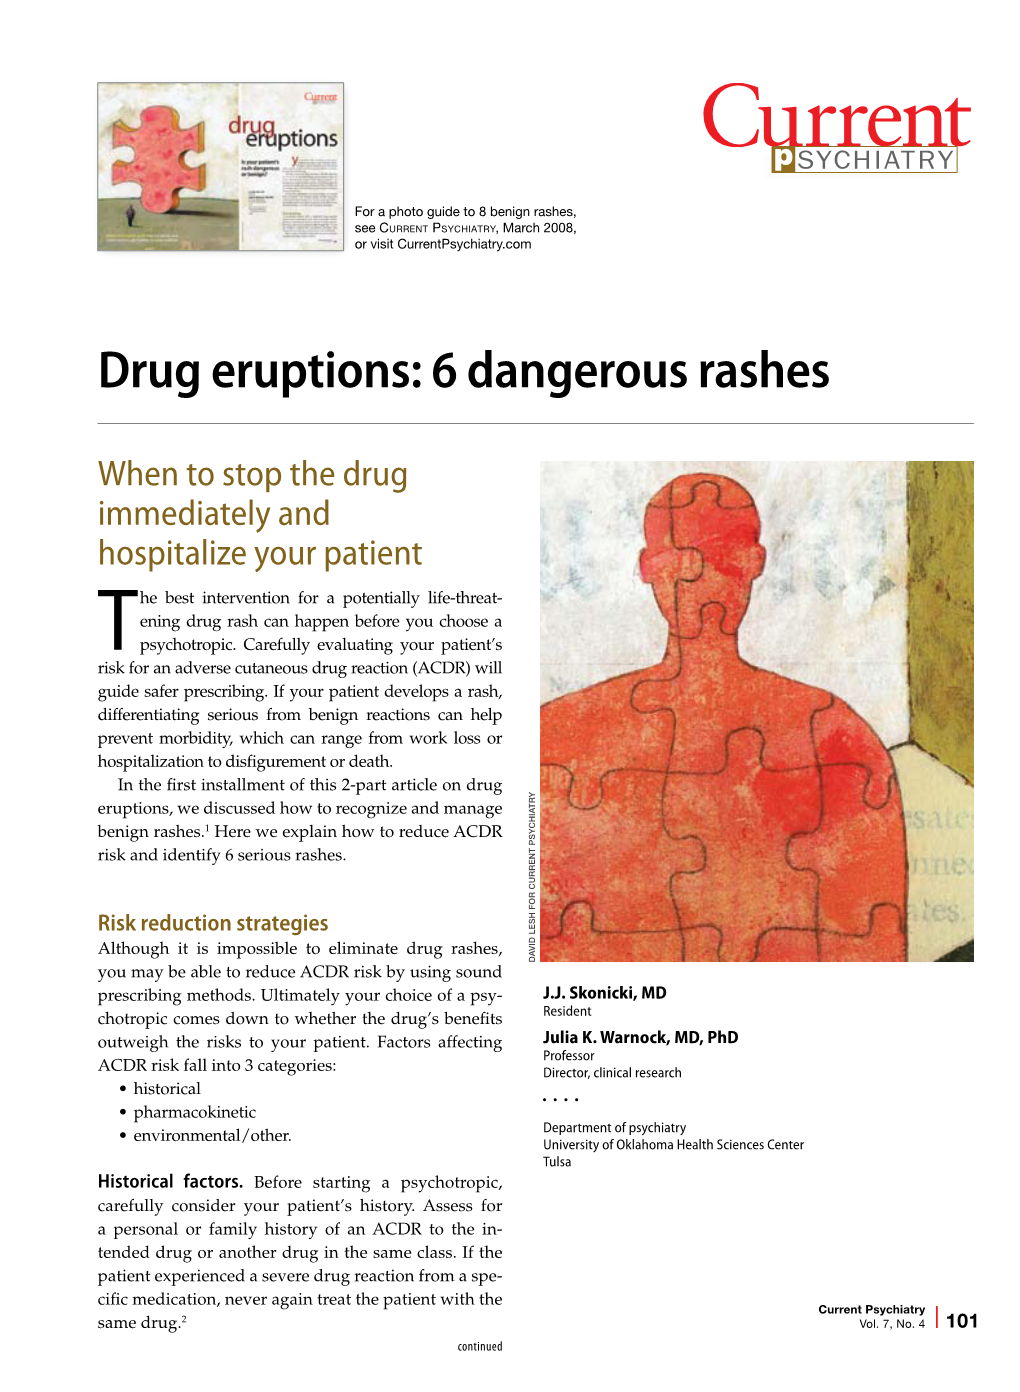 Drug Eruptions: 6 Dangerous Rashes